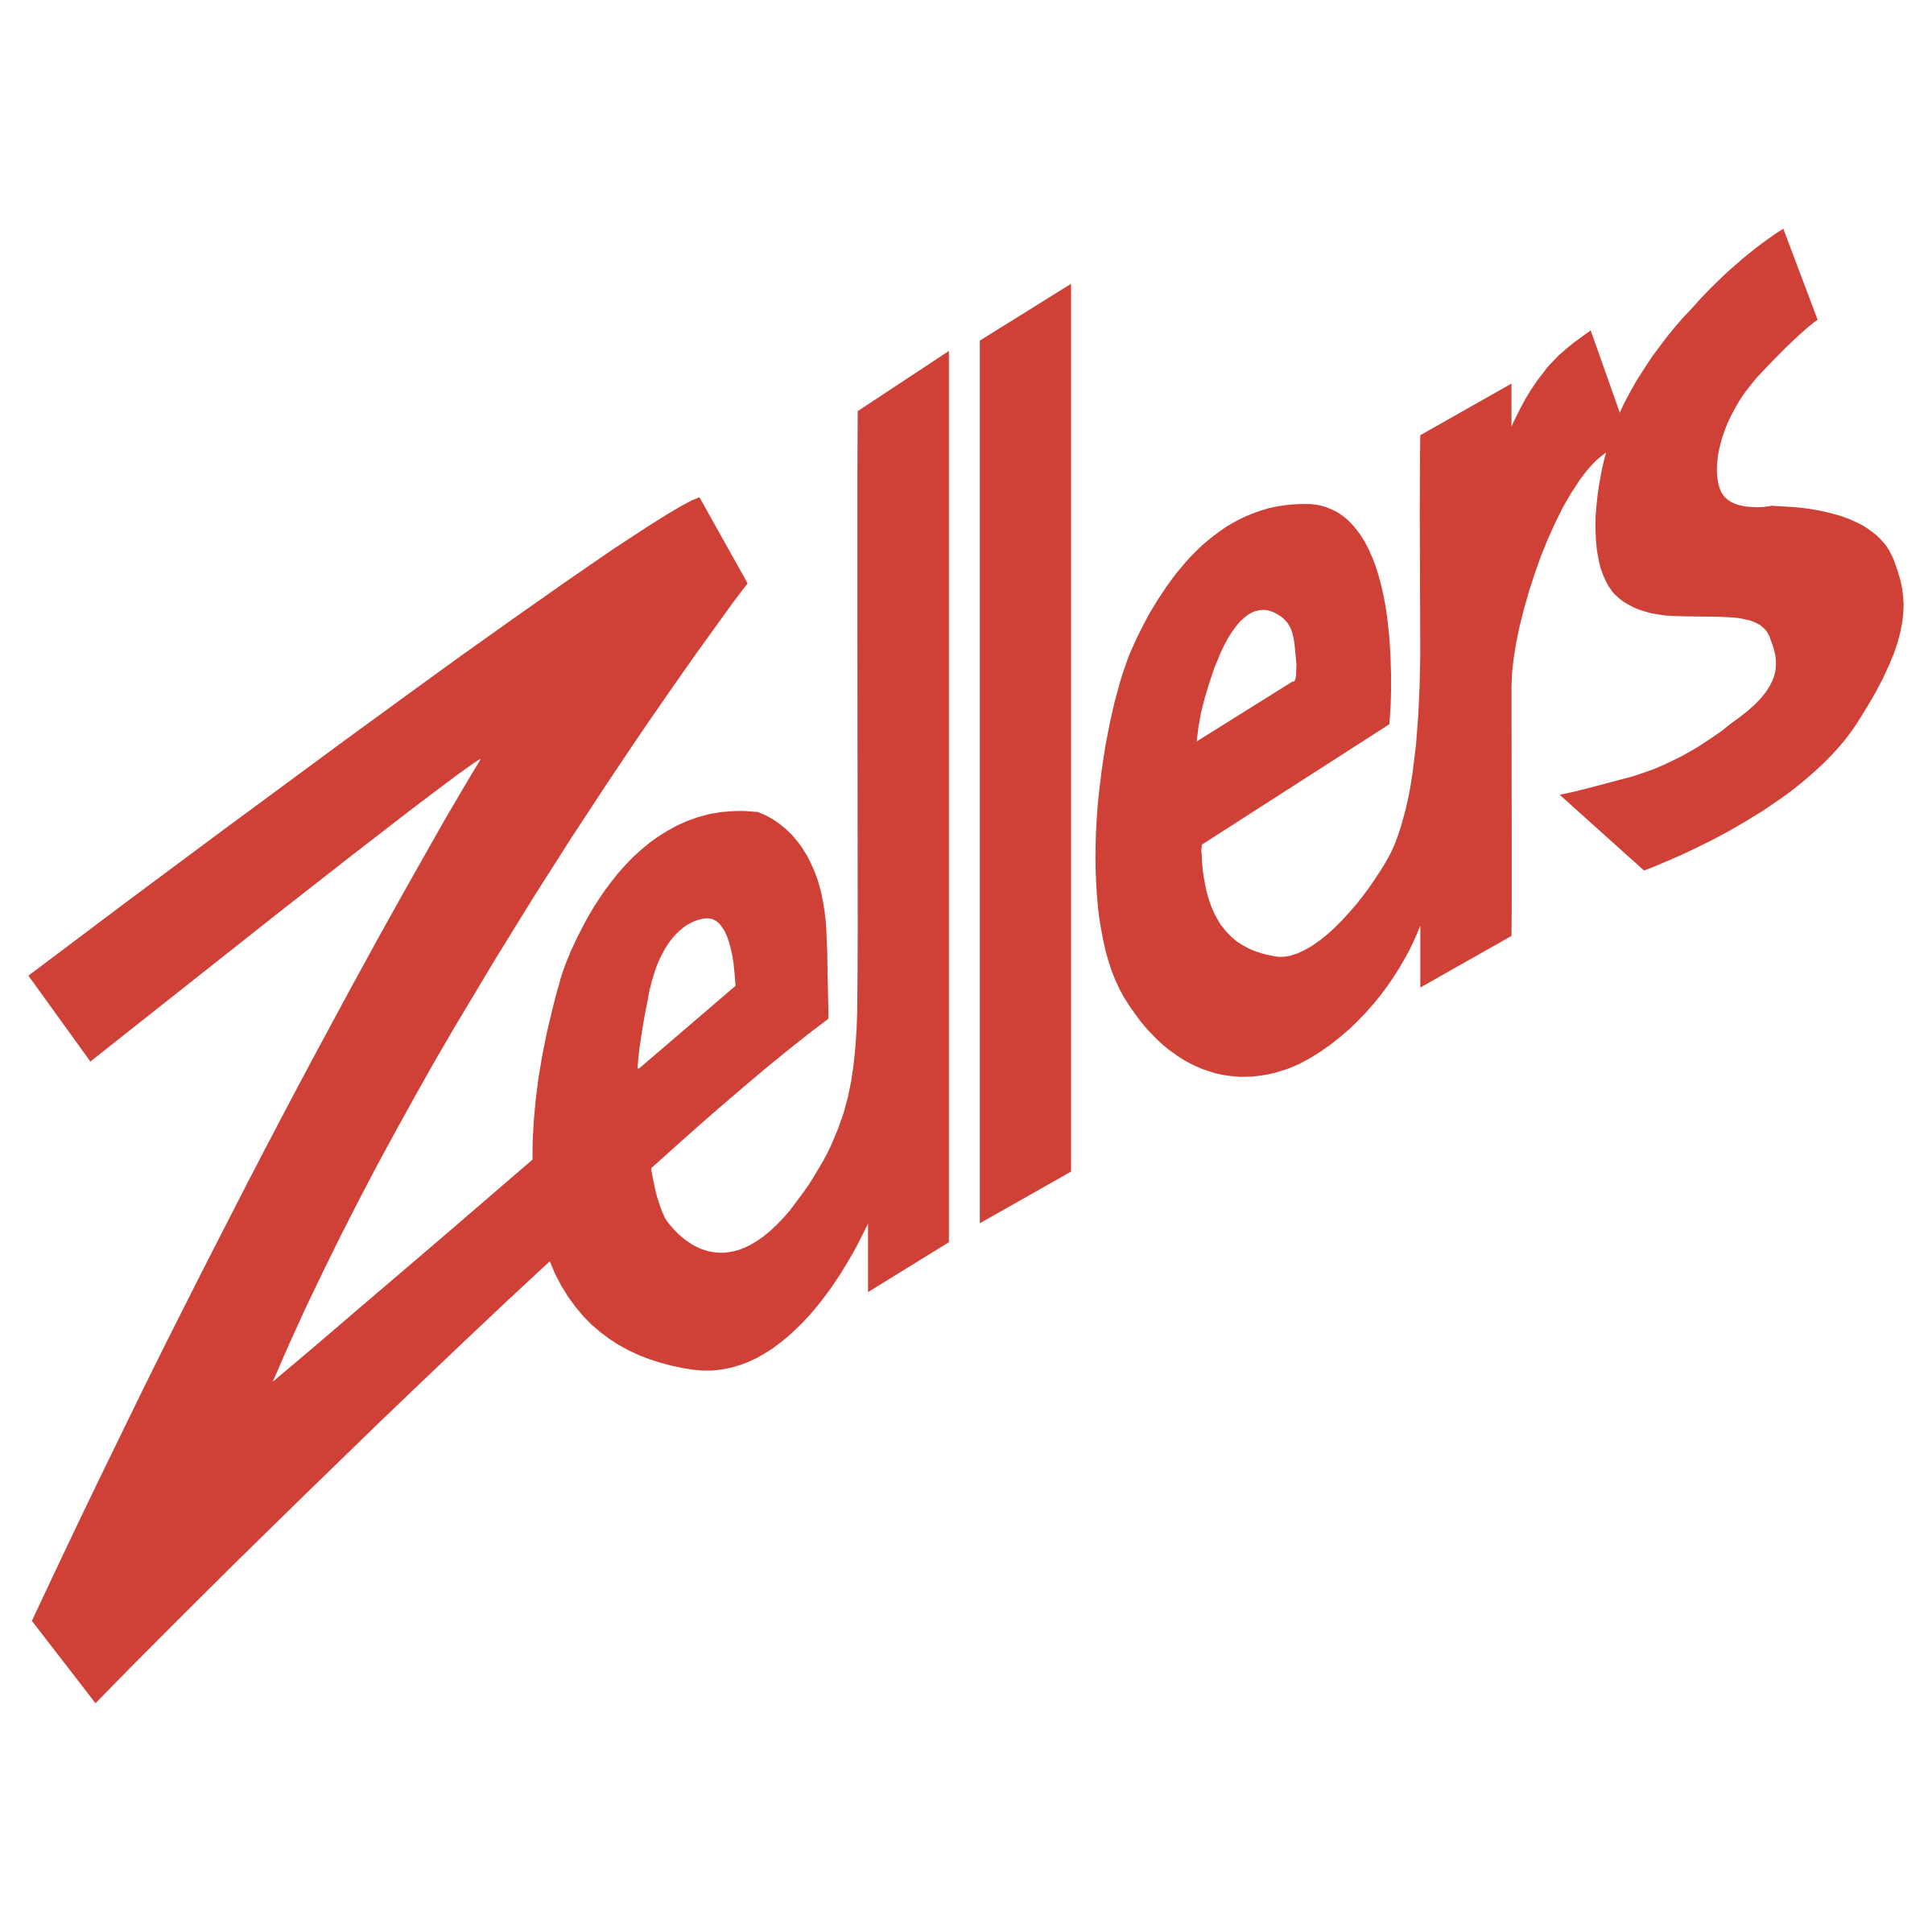 Zellers Logo - Zellers Logo PNG Transparent & SVG Vector